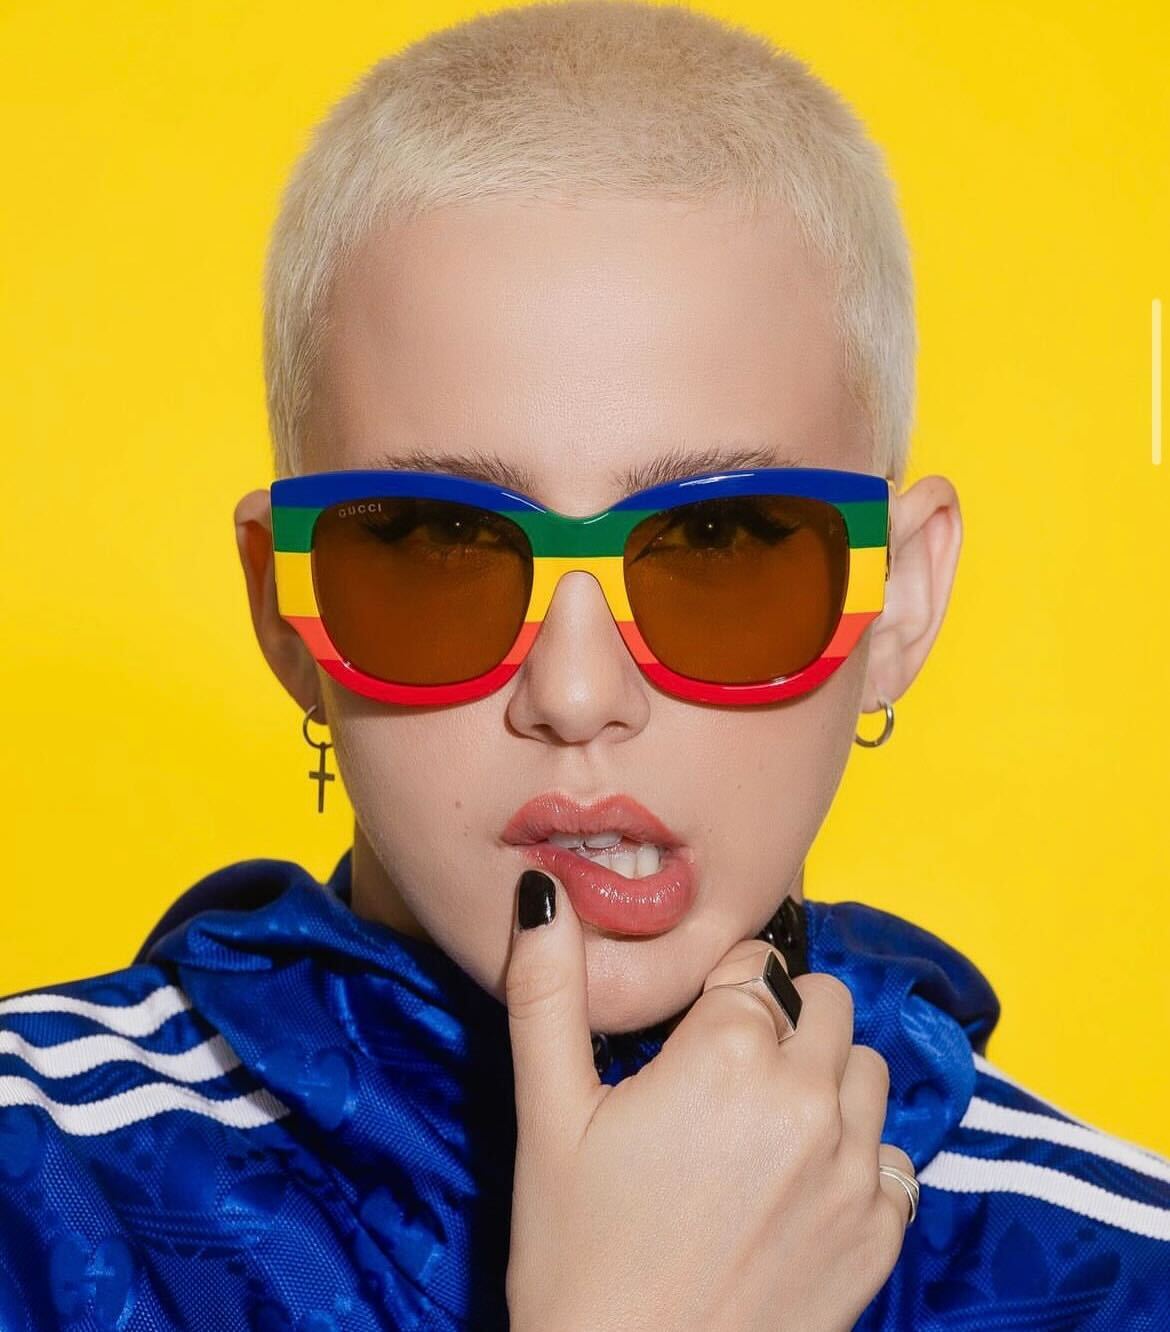 Marcella Rica posa com óculos com as cores da bandeira LGBTQIAPN+ Reprodução Instagram/ GigiDias